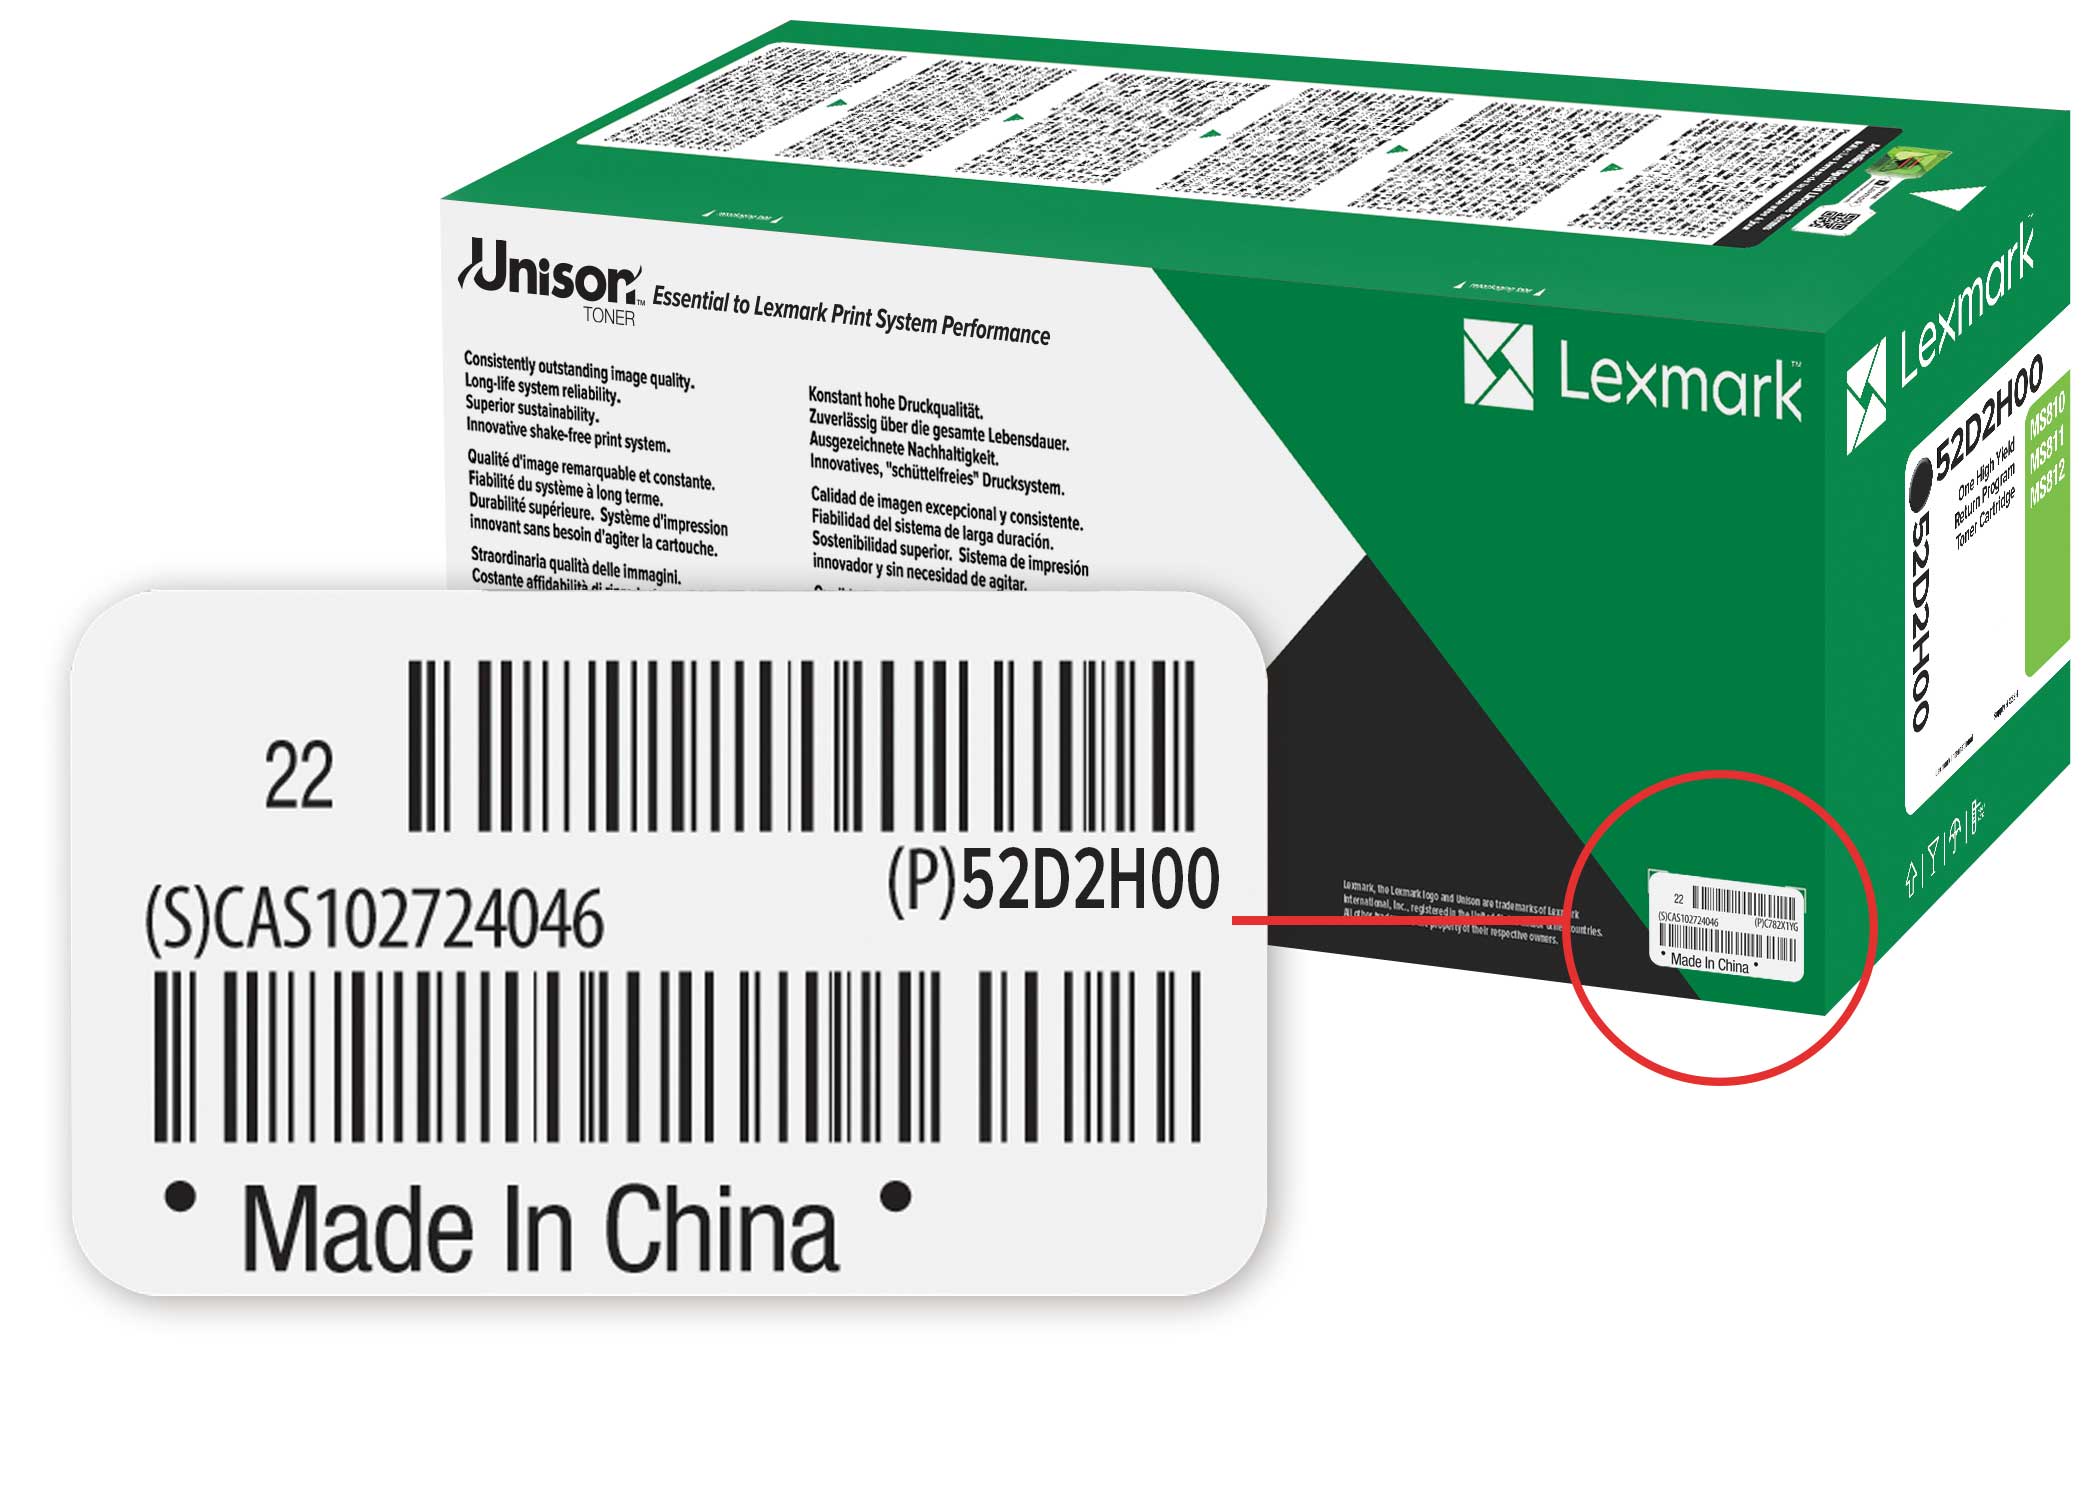 Orijinal Lexmark sarf malzemelerinin ambalajında yer alan seri numarası